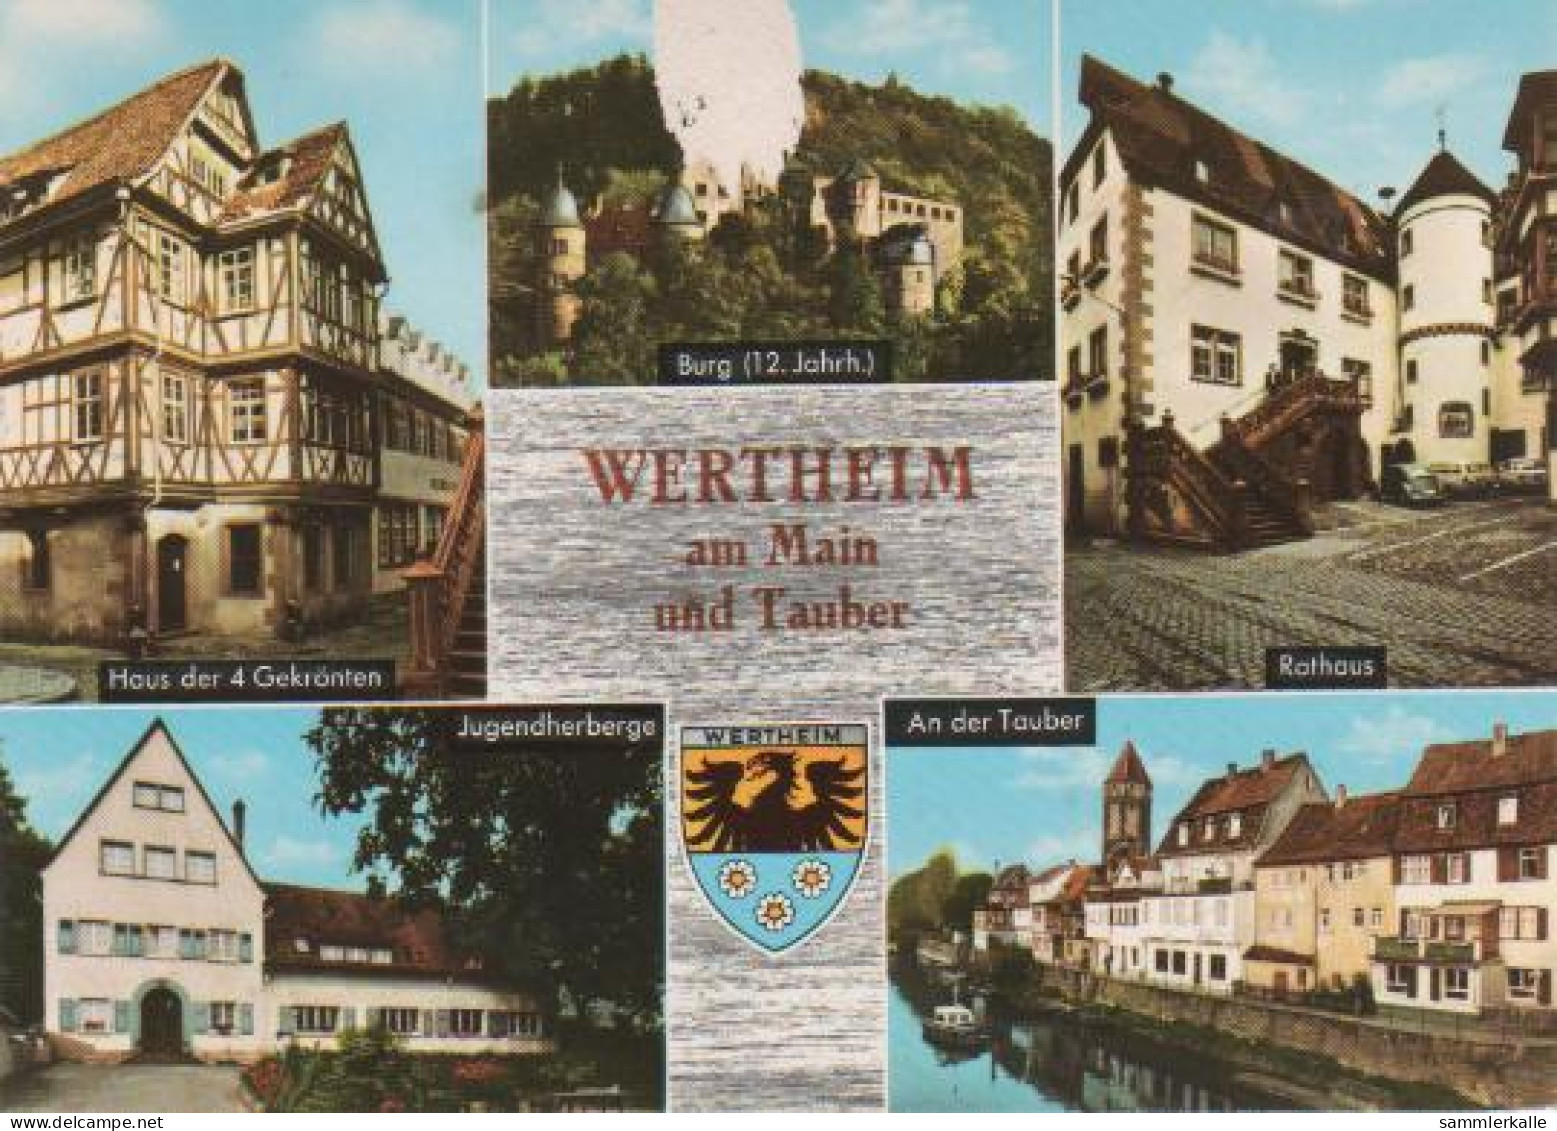 660 - Wertheim - Haus Der 4 Gekrönten, Burg (12. Jahrh.), Rathaus, Jugendherberge, An Der Tauber - 1972 - Wertheim